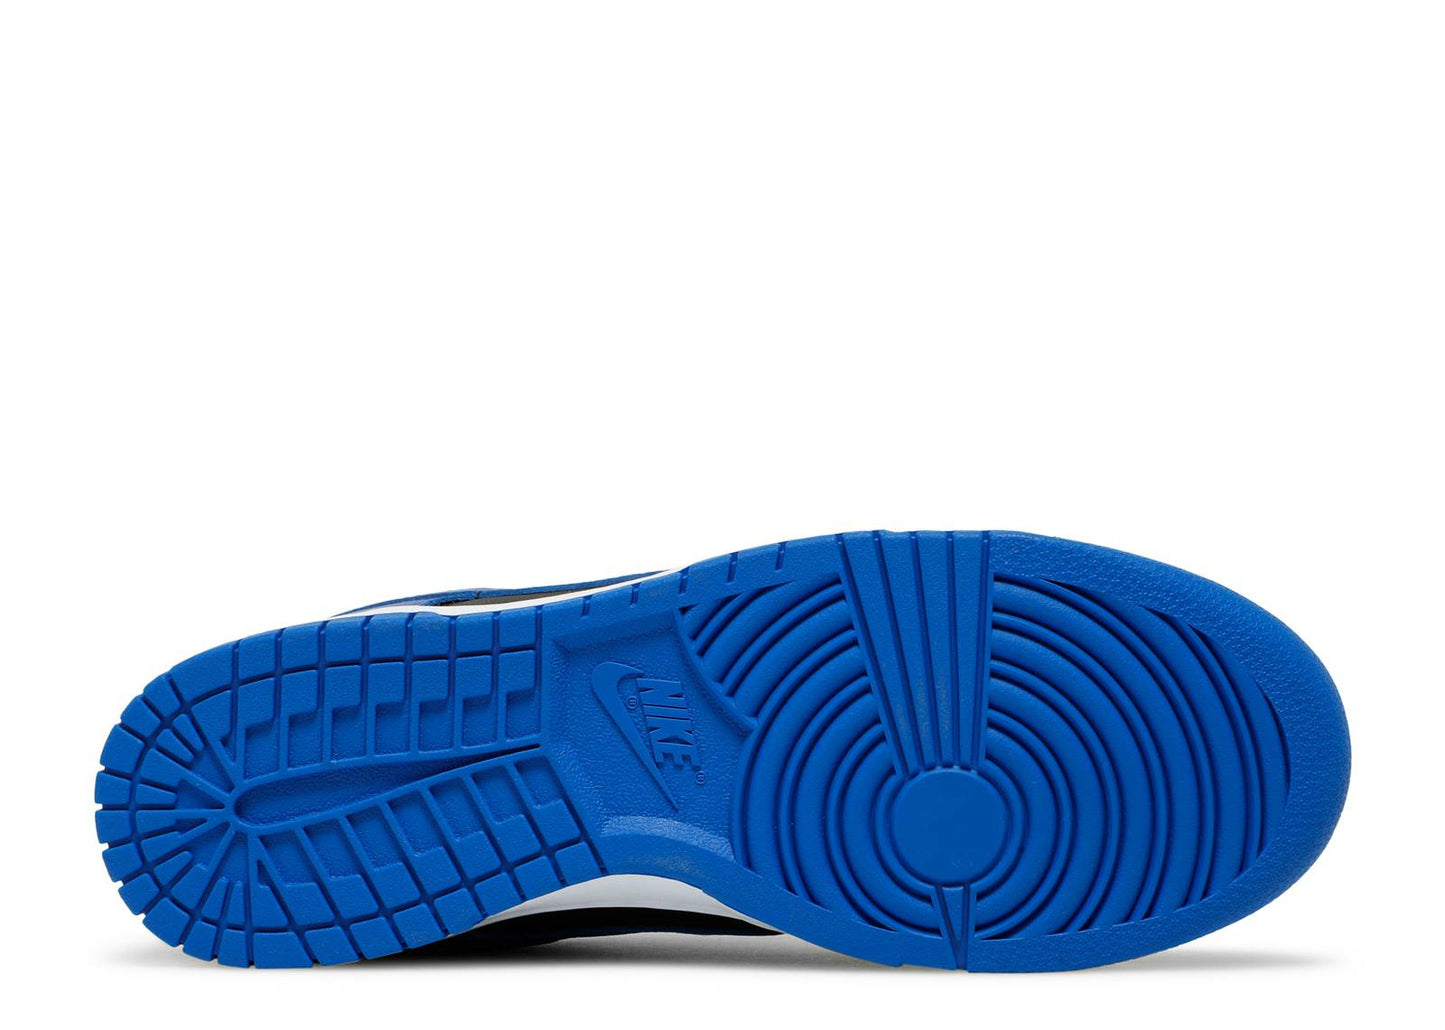 Nike Dunk Low "Hyper Cobalt"